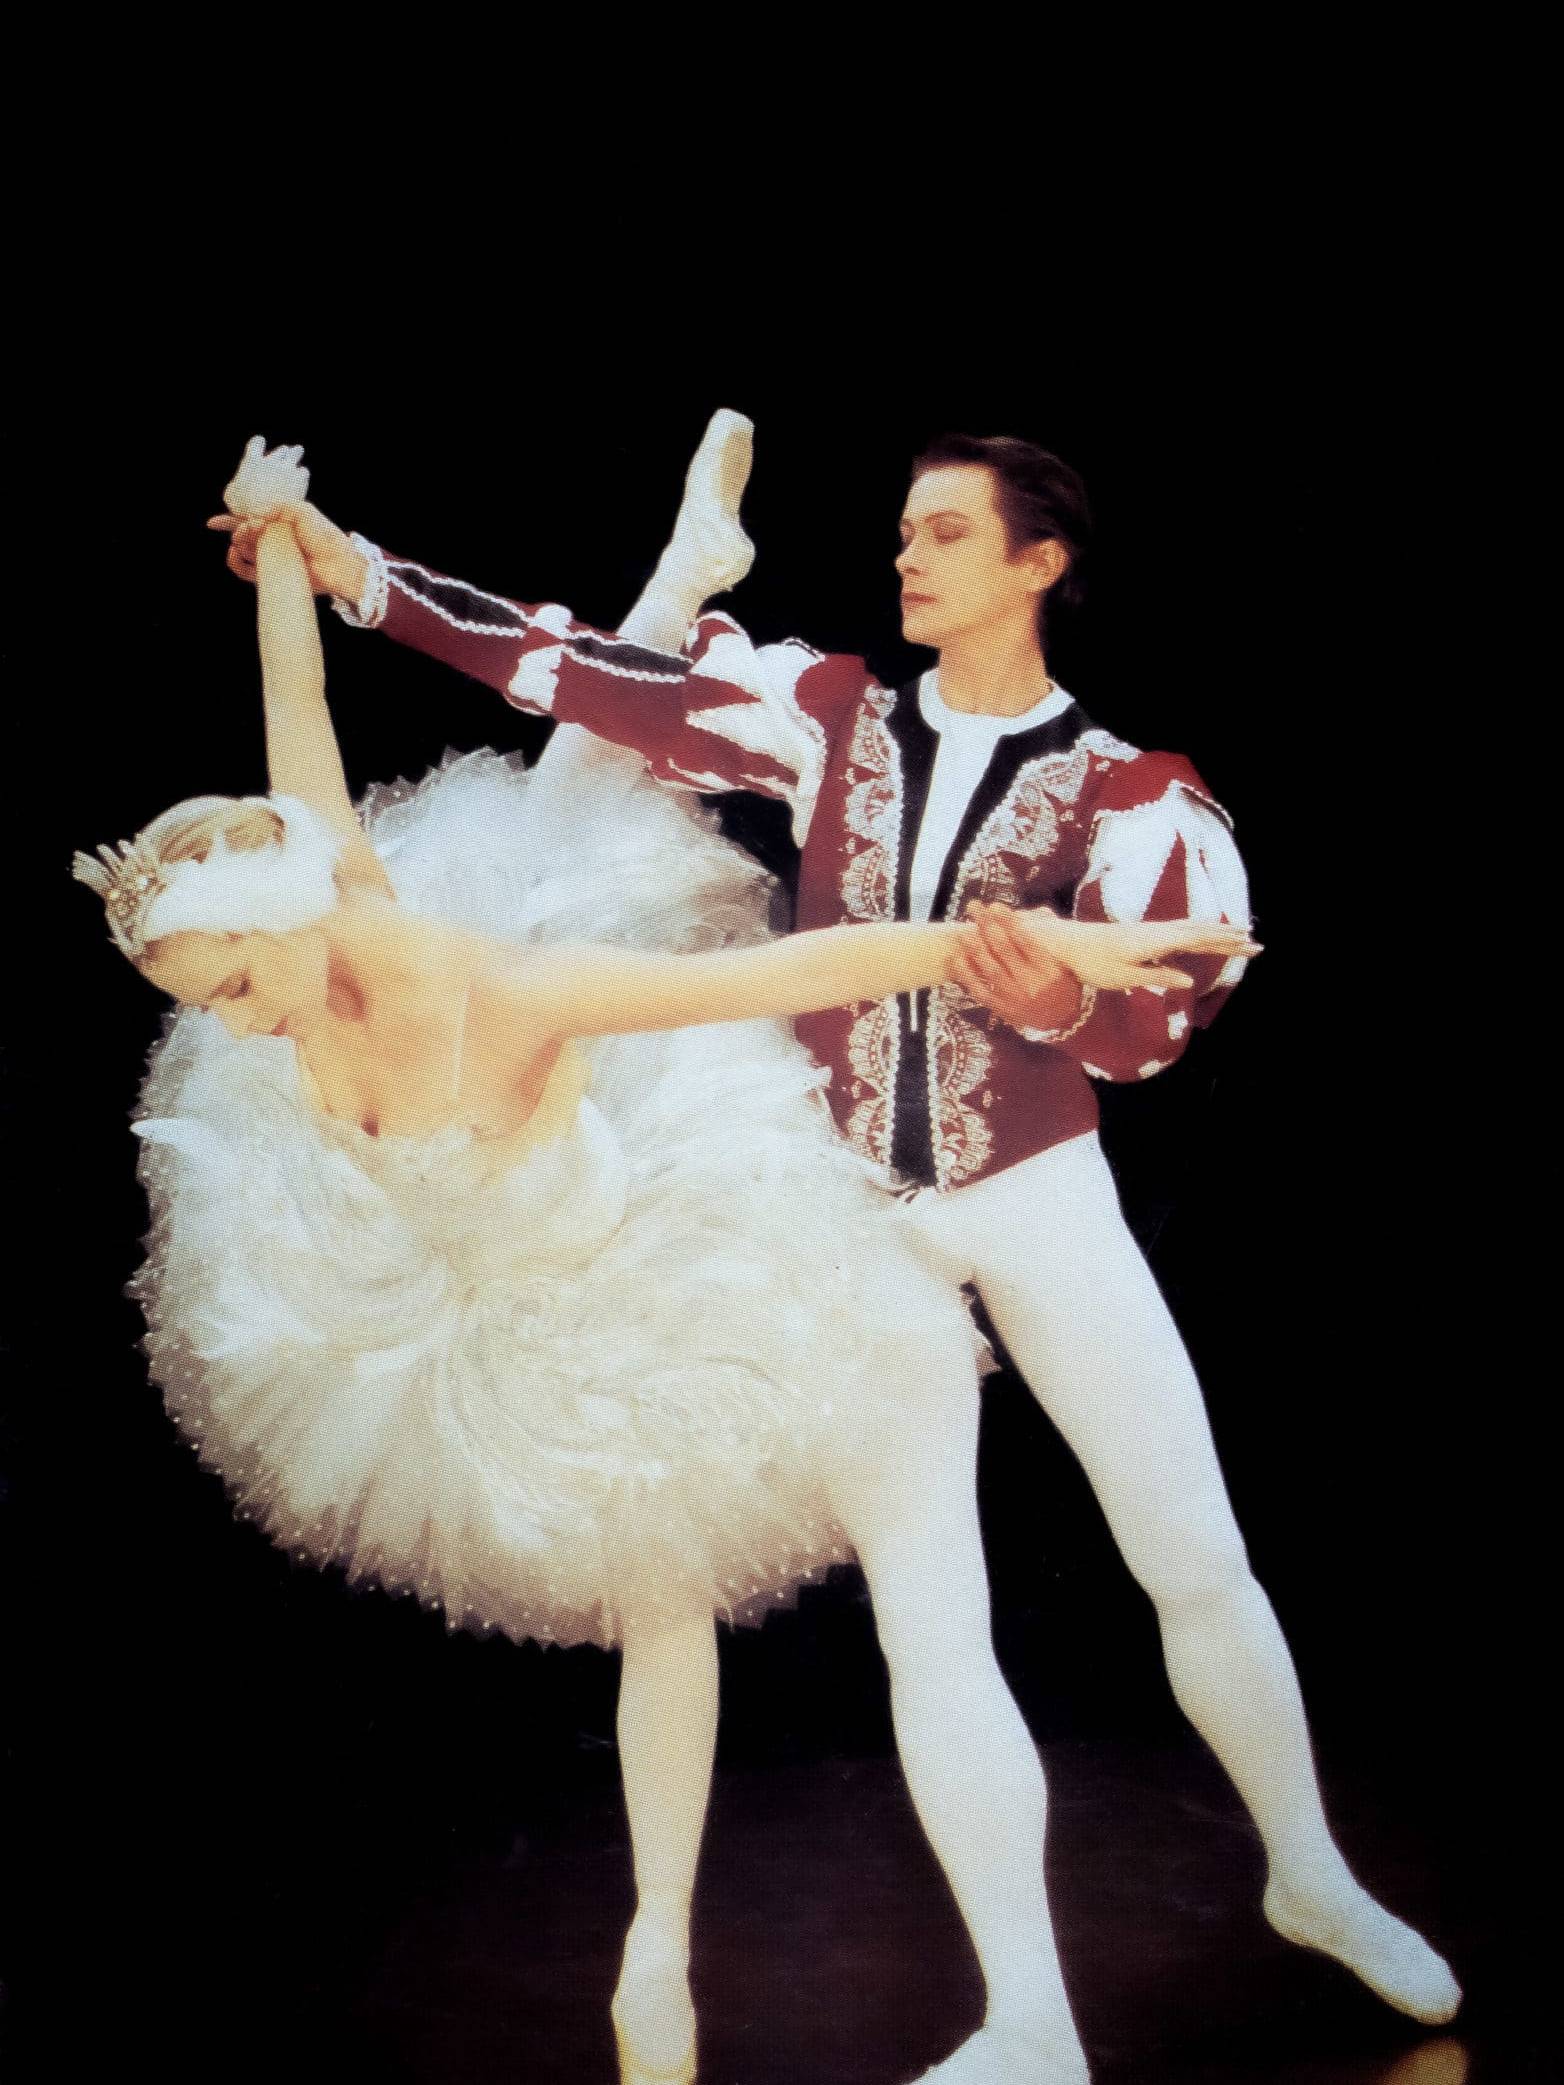 les deux costumes réalisés pour deux danseurs de ballet